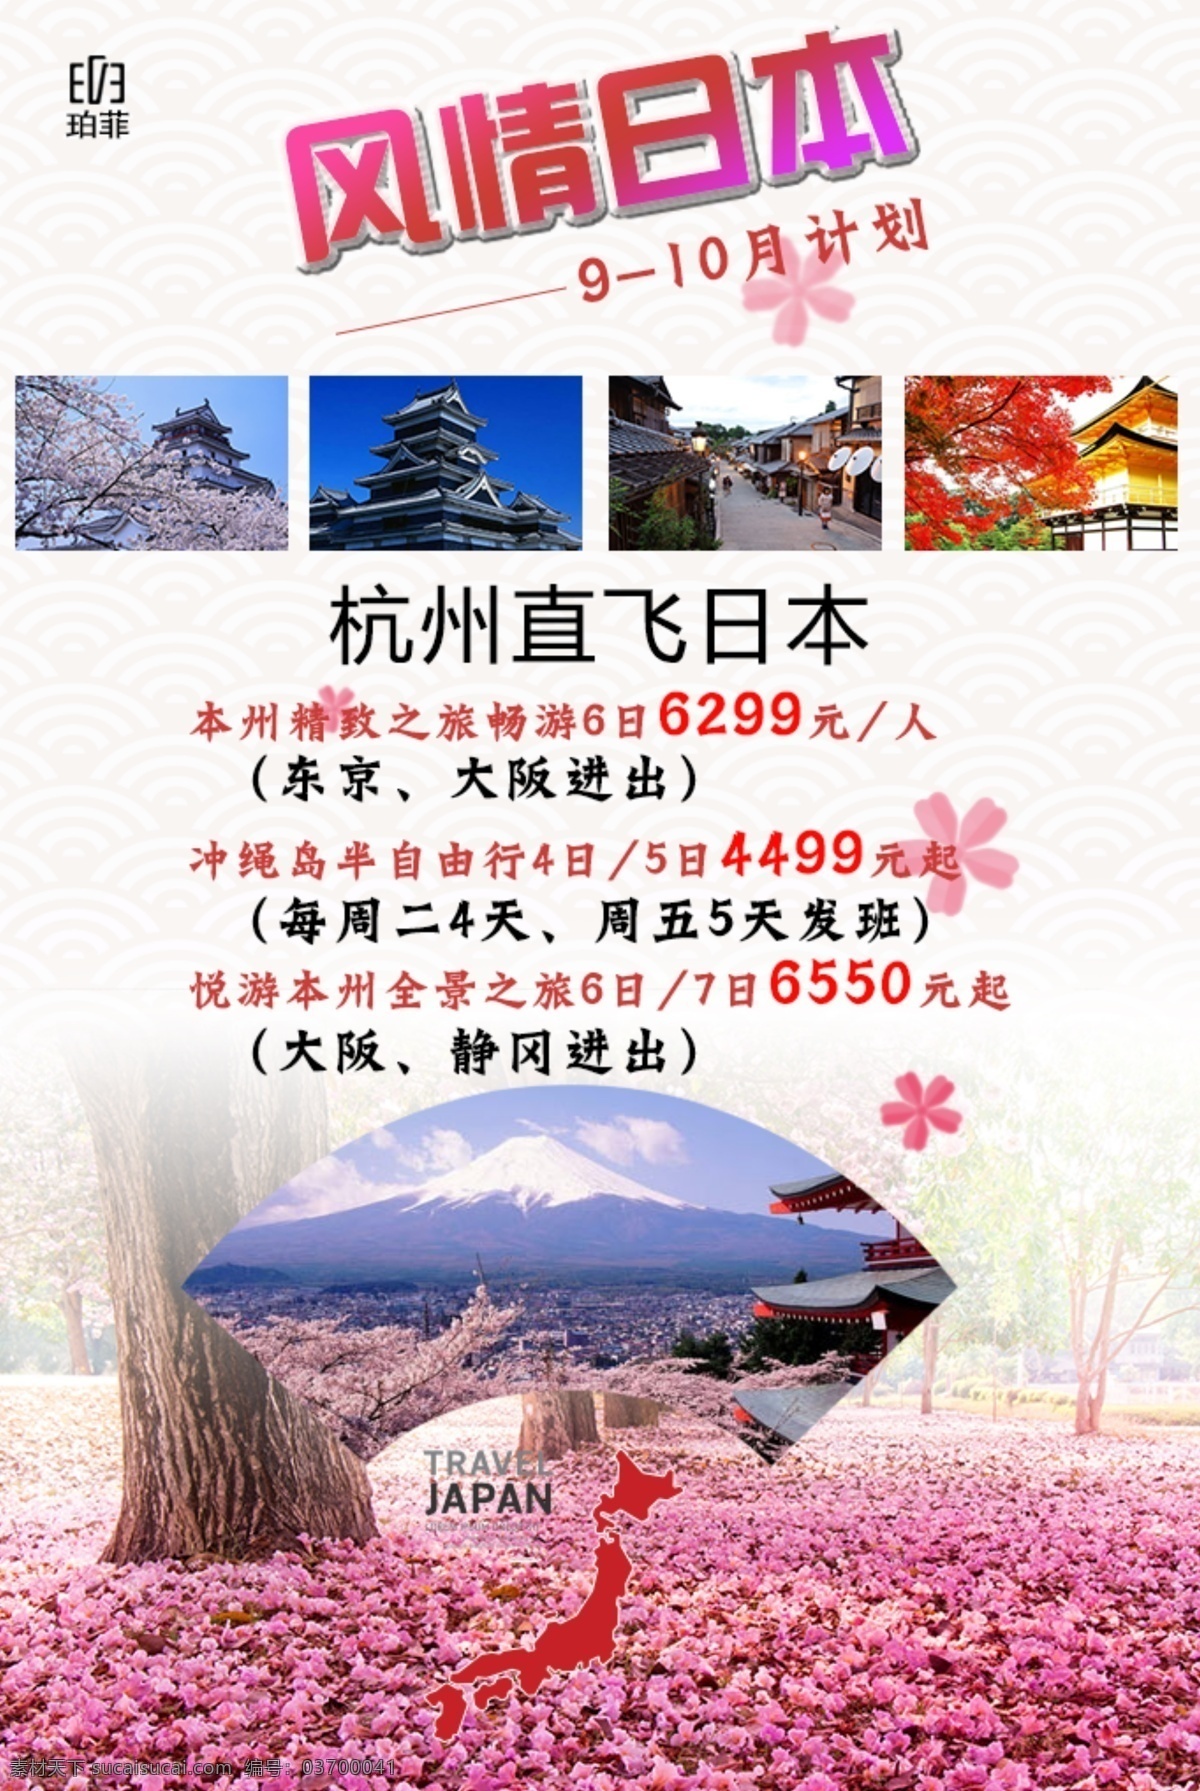 日本旅游海报 风情日本 樱花季节 旅游海报 白色